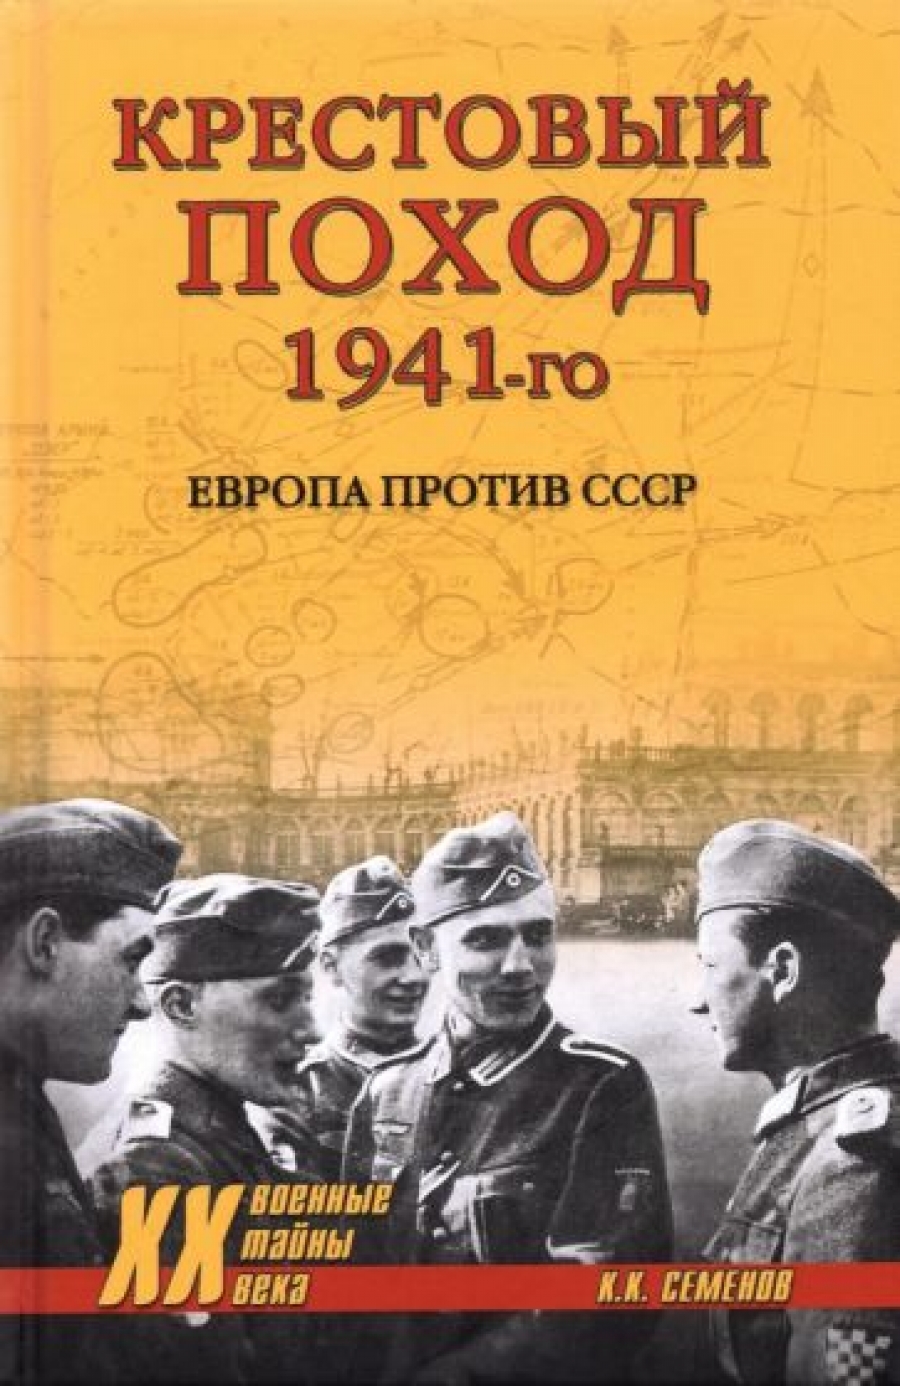  ..   1941-.    